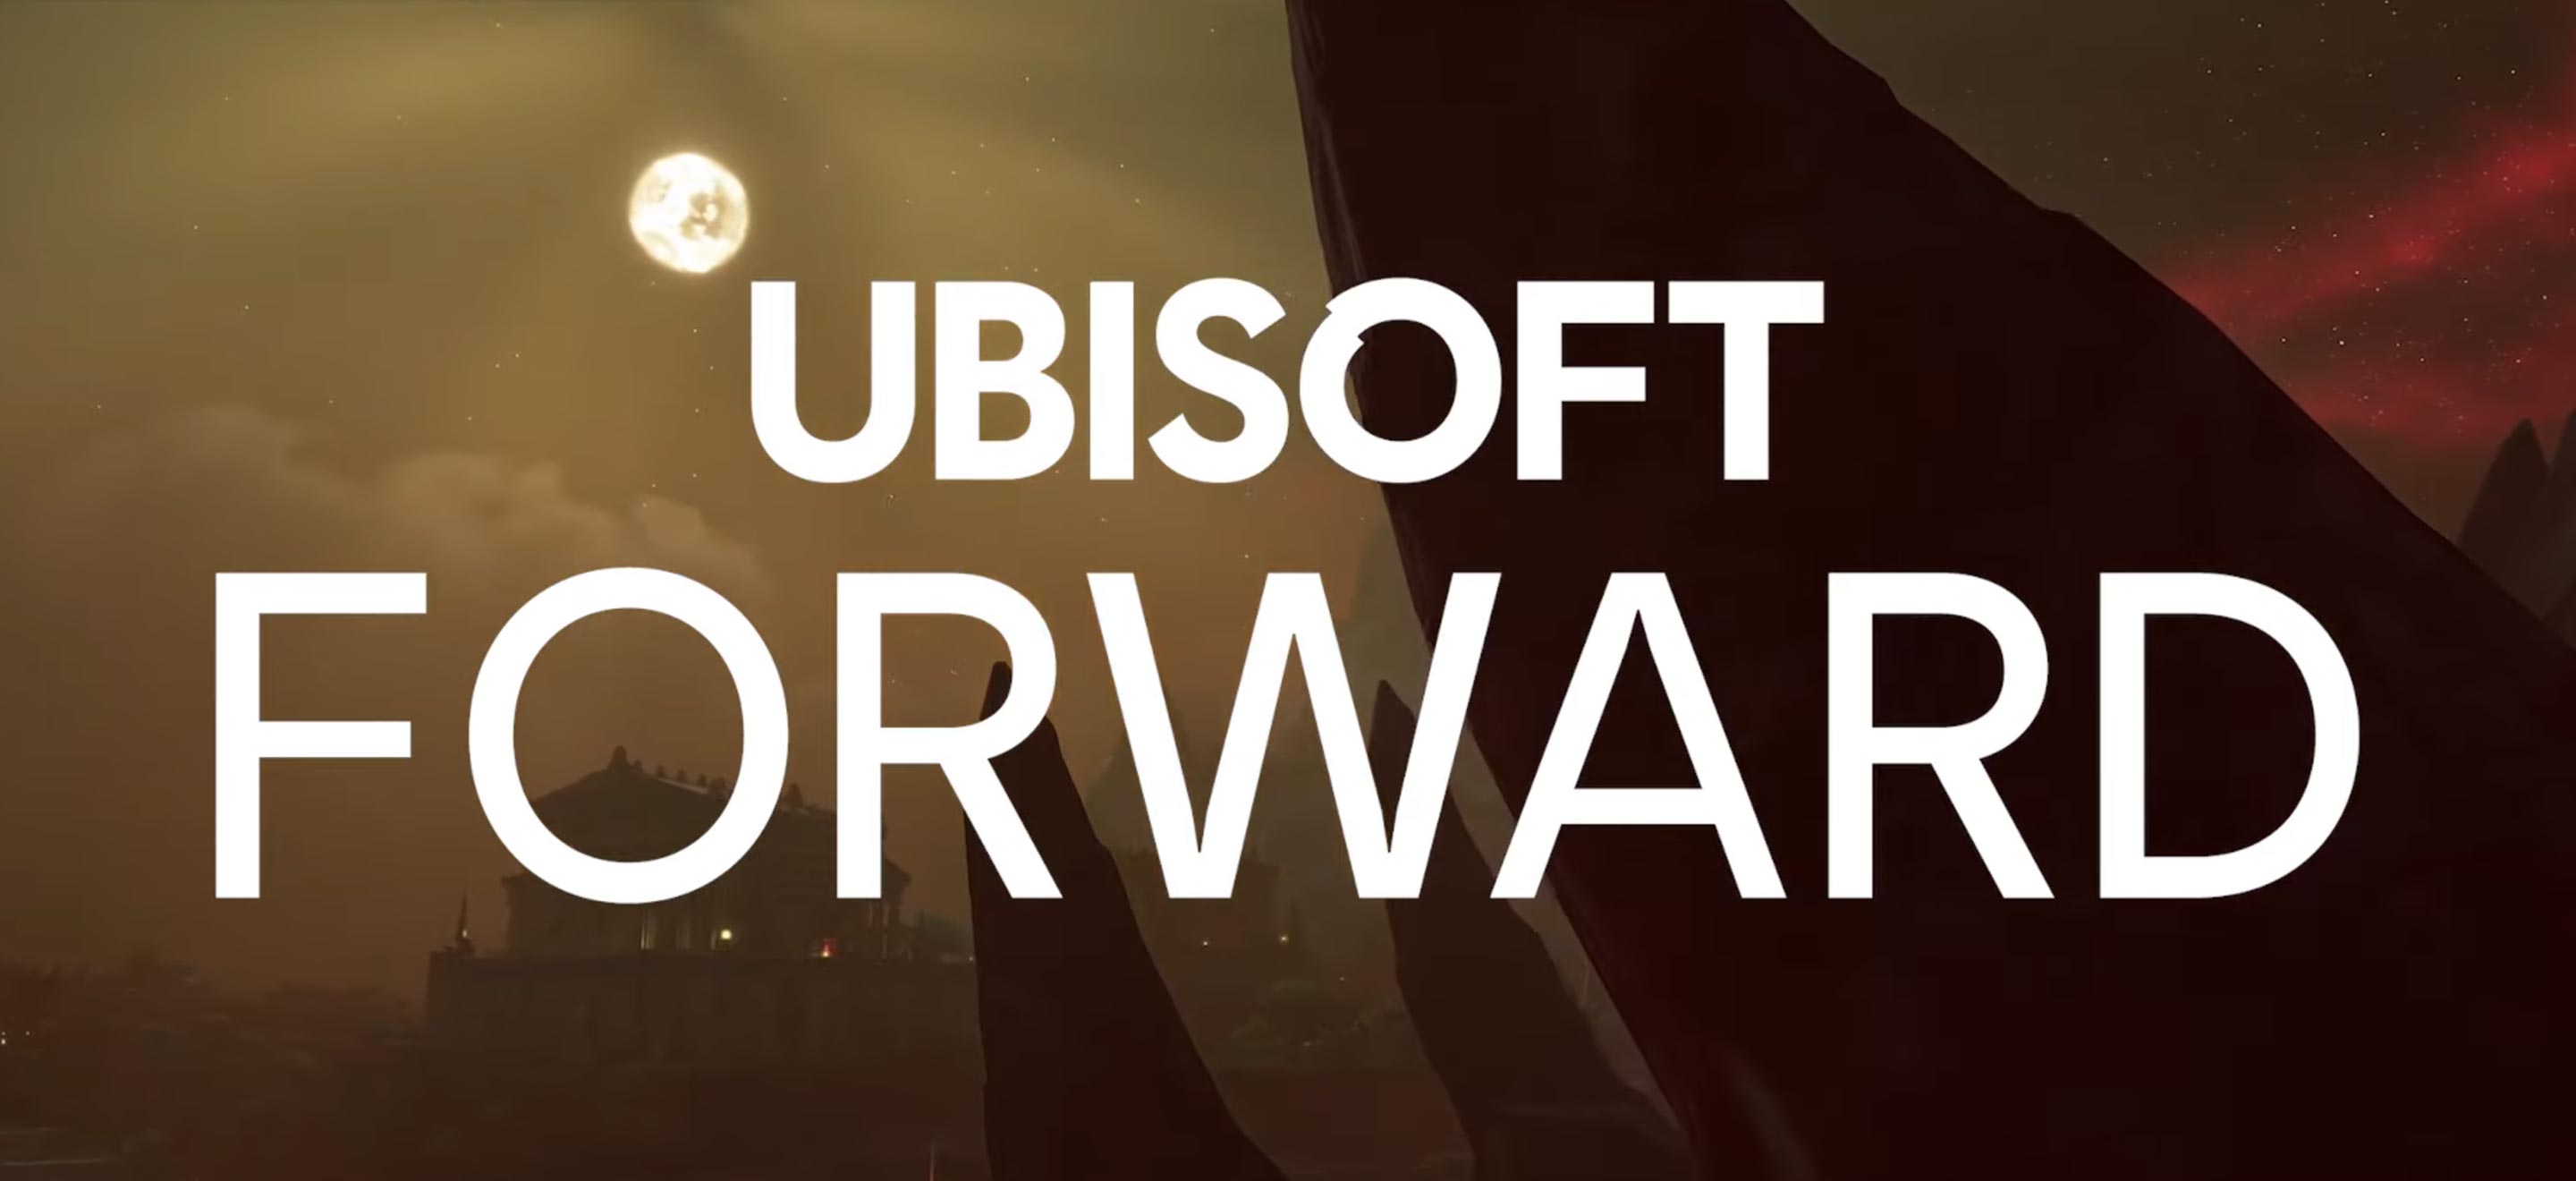 Ubisoft Forward du 10/09/2020 : résumé des annonces